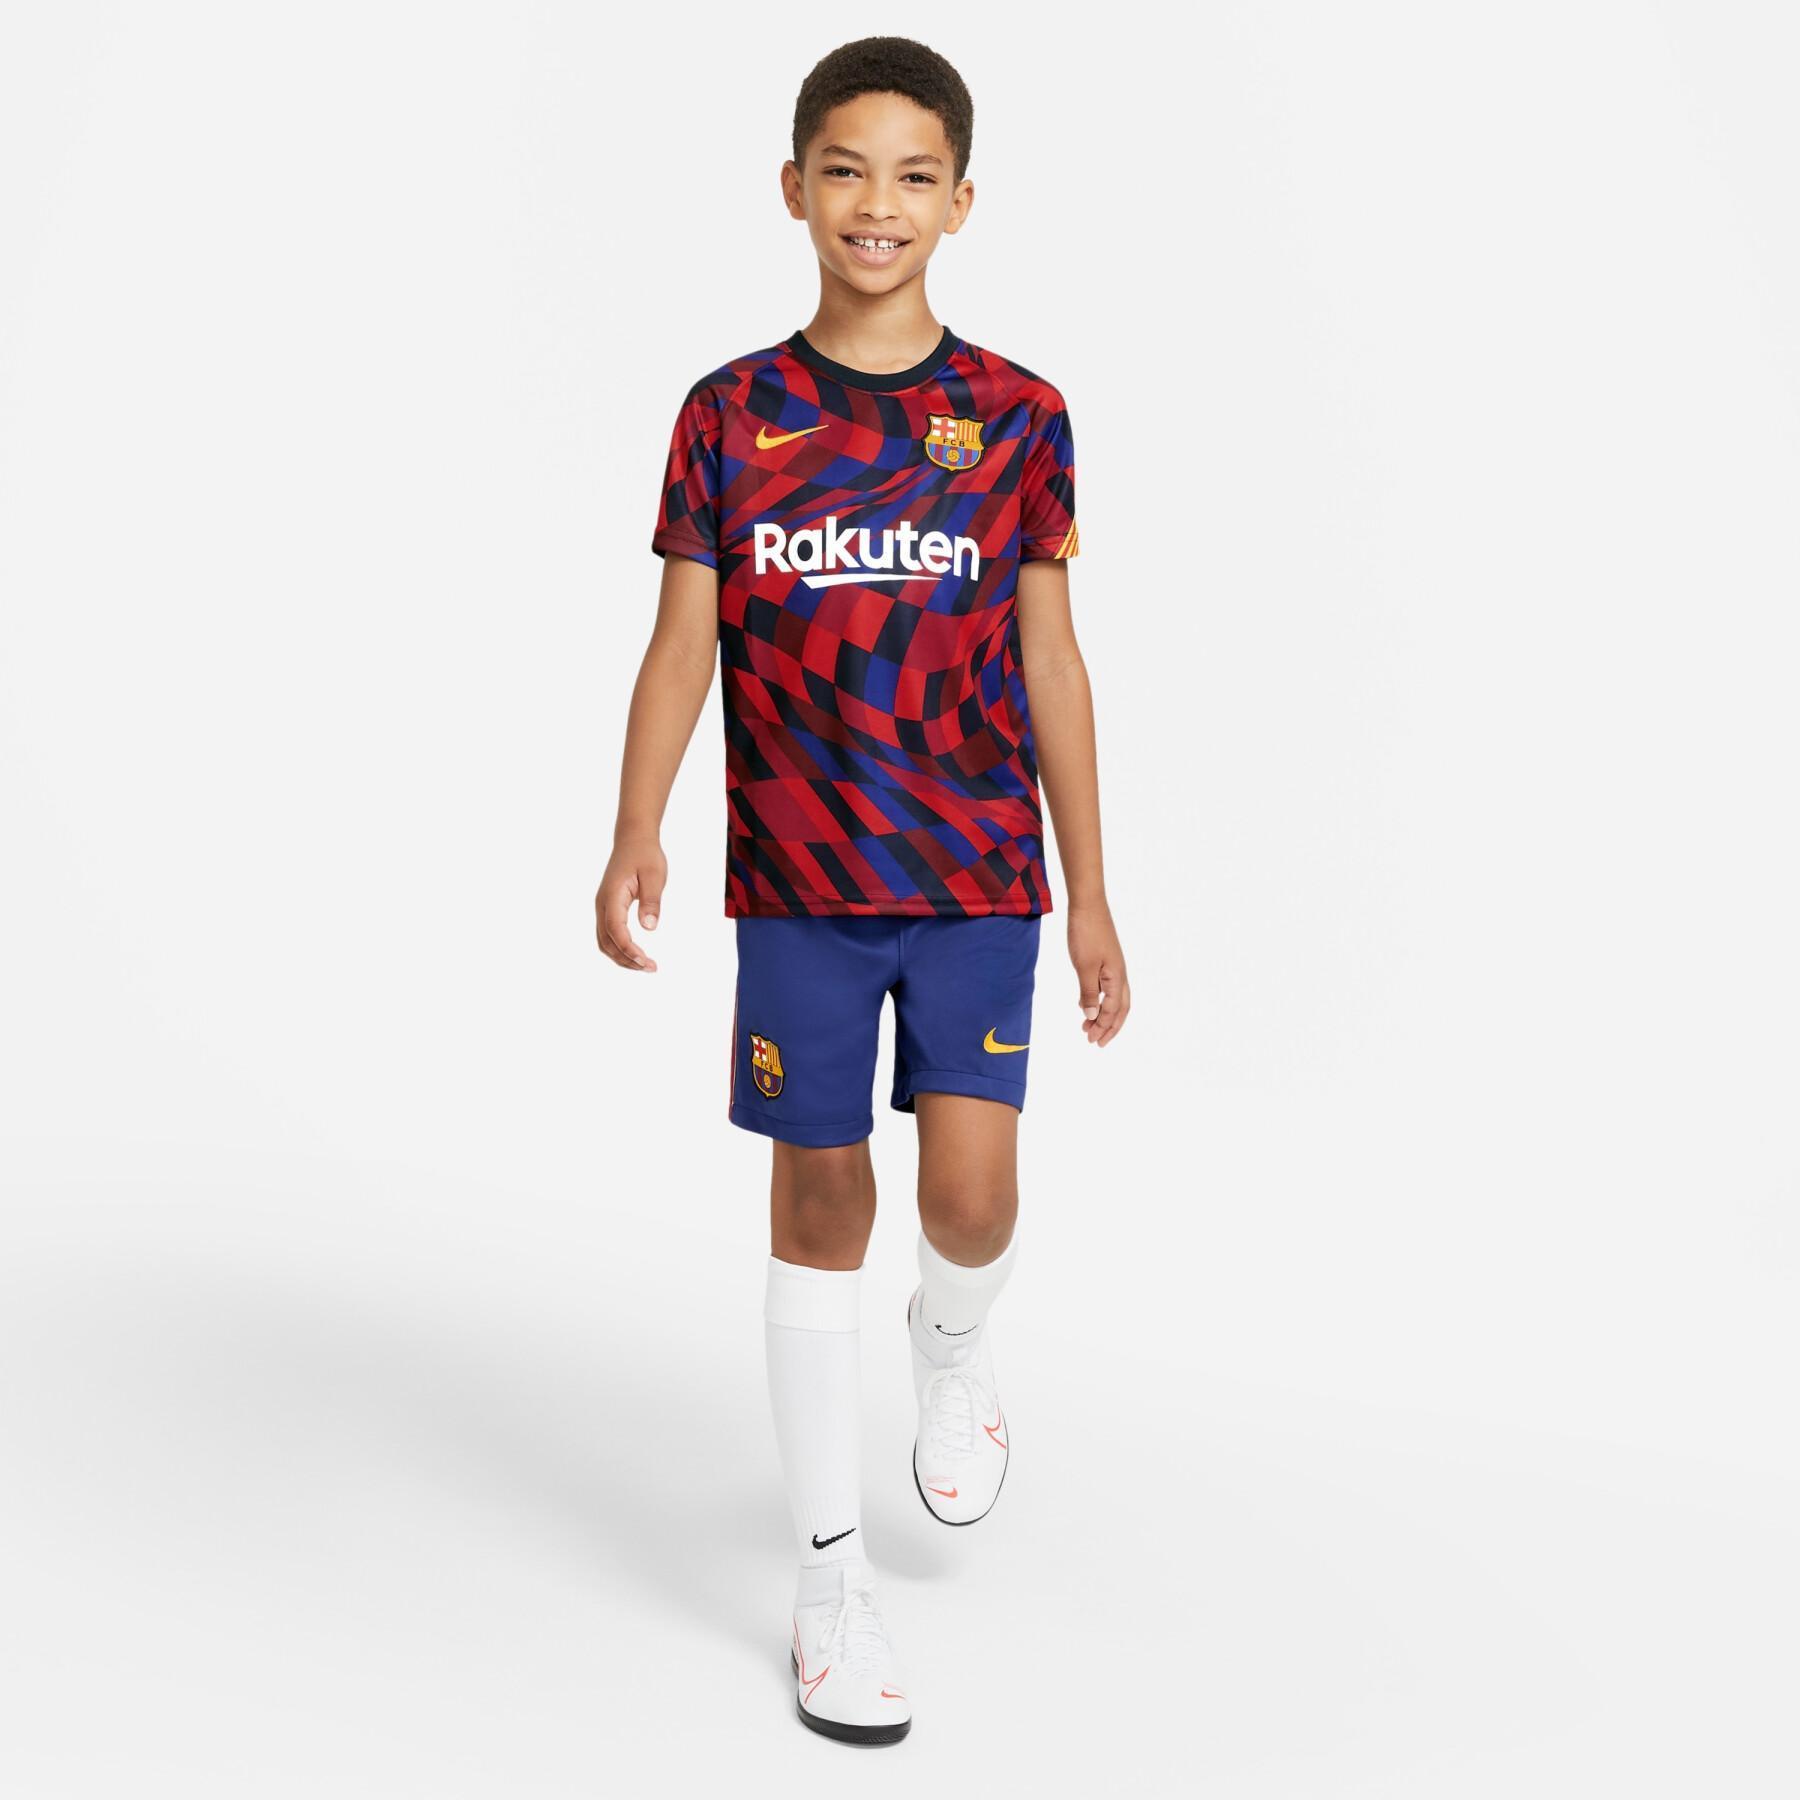 Children's shorts home barcelona 2020/21